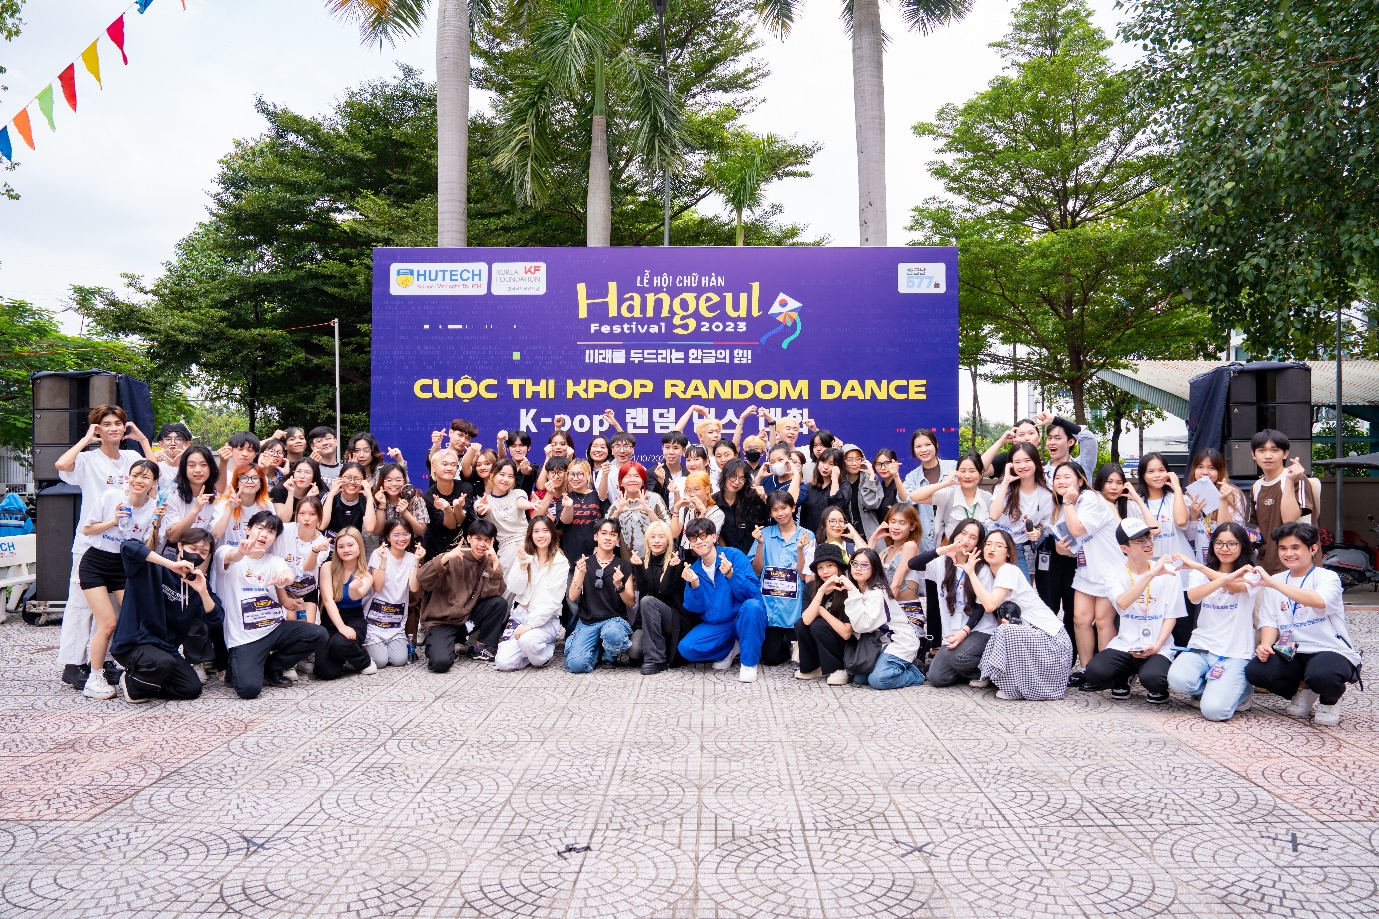 Giới trẻ TP.HCM háo hức “phá đảo” Lễ hội chữ Hàn - Hangeul Festival 2023 tại HUTECH - Ảnh 7.